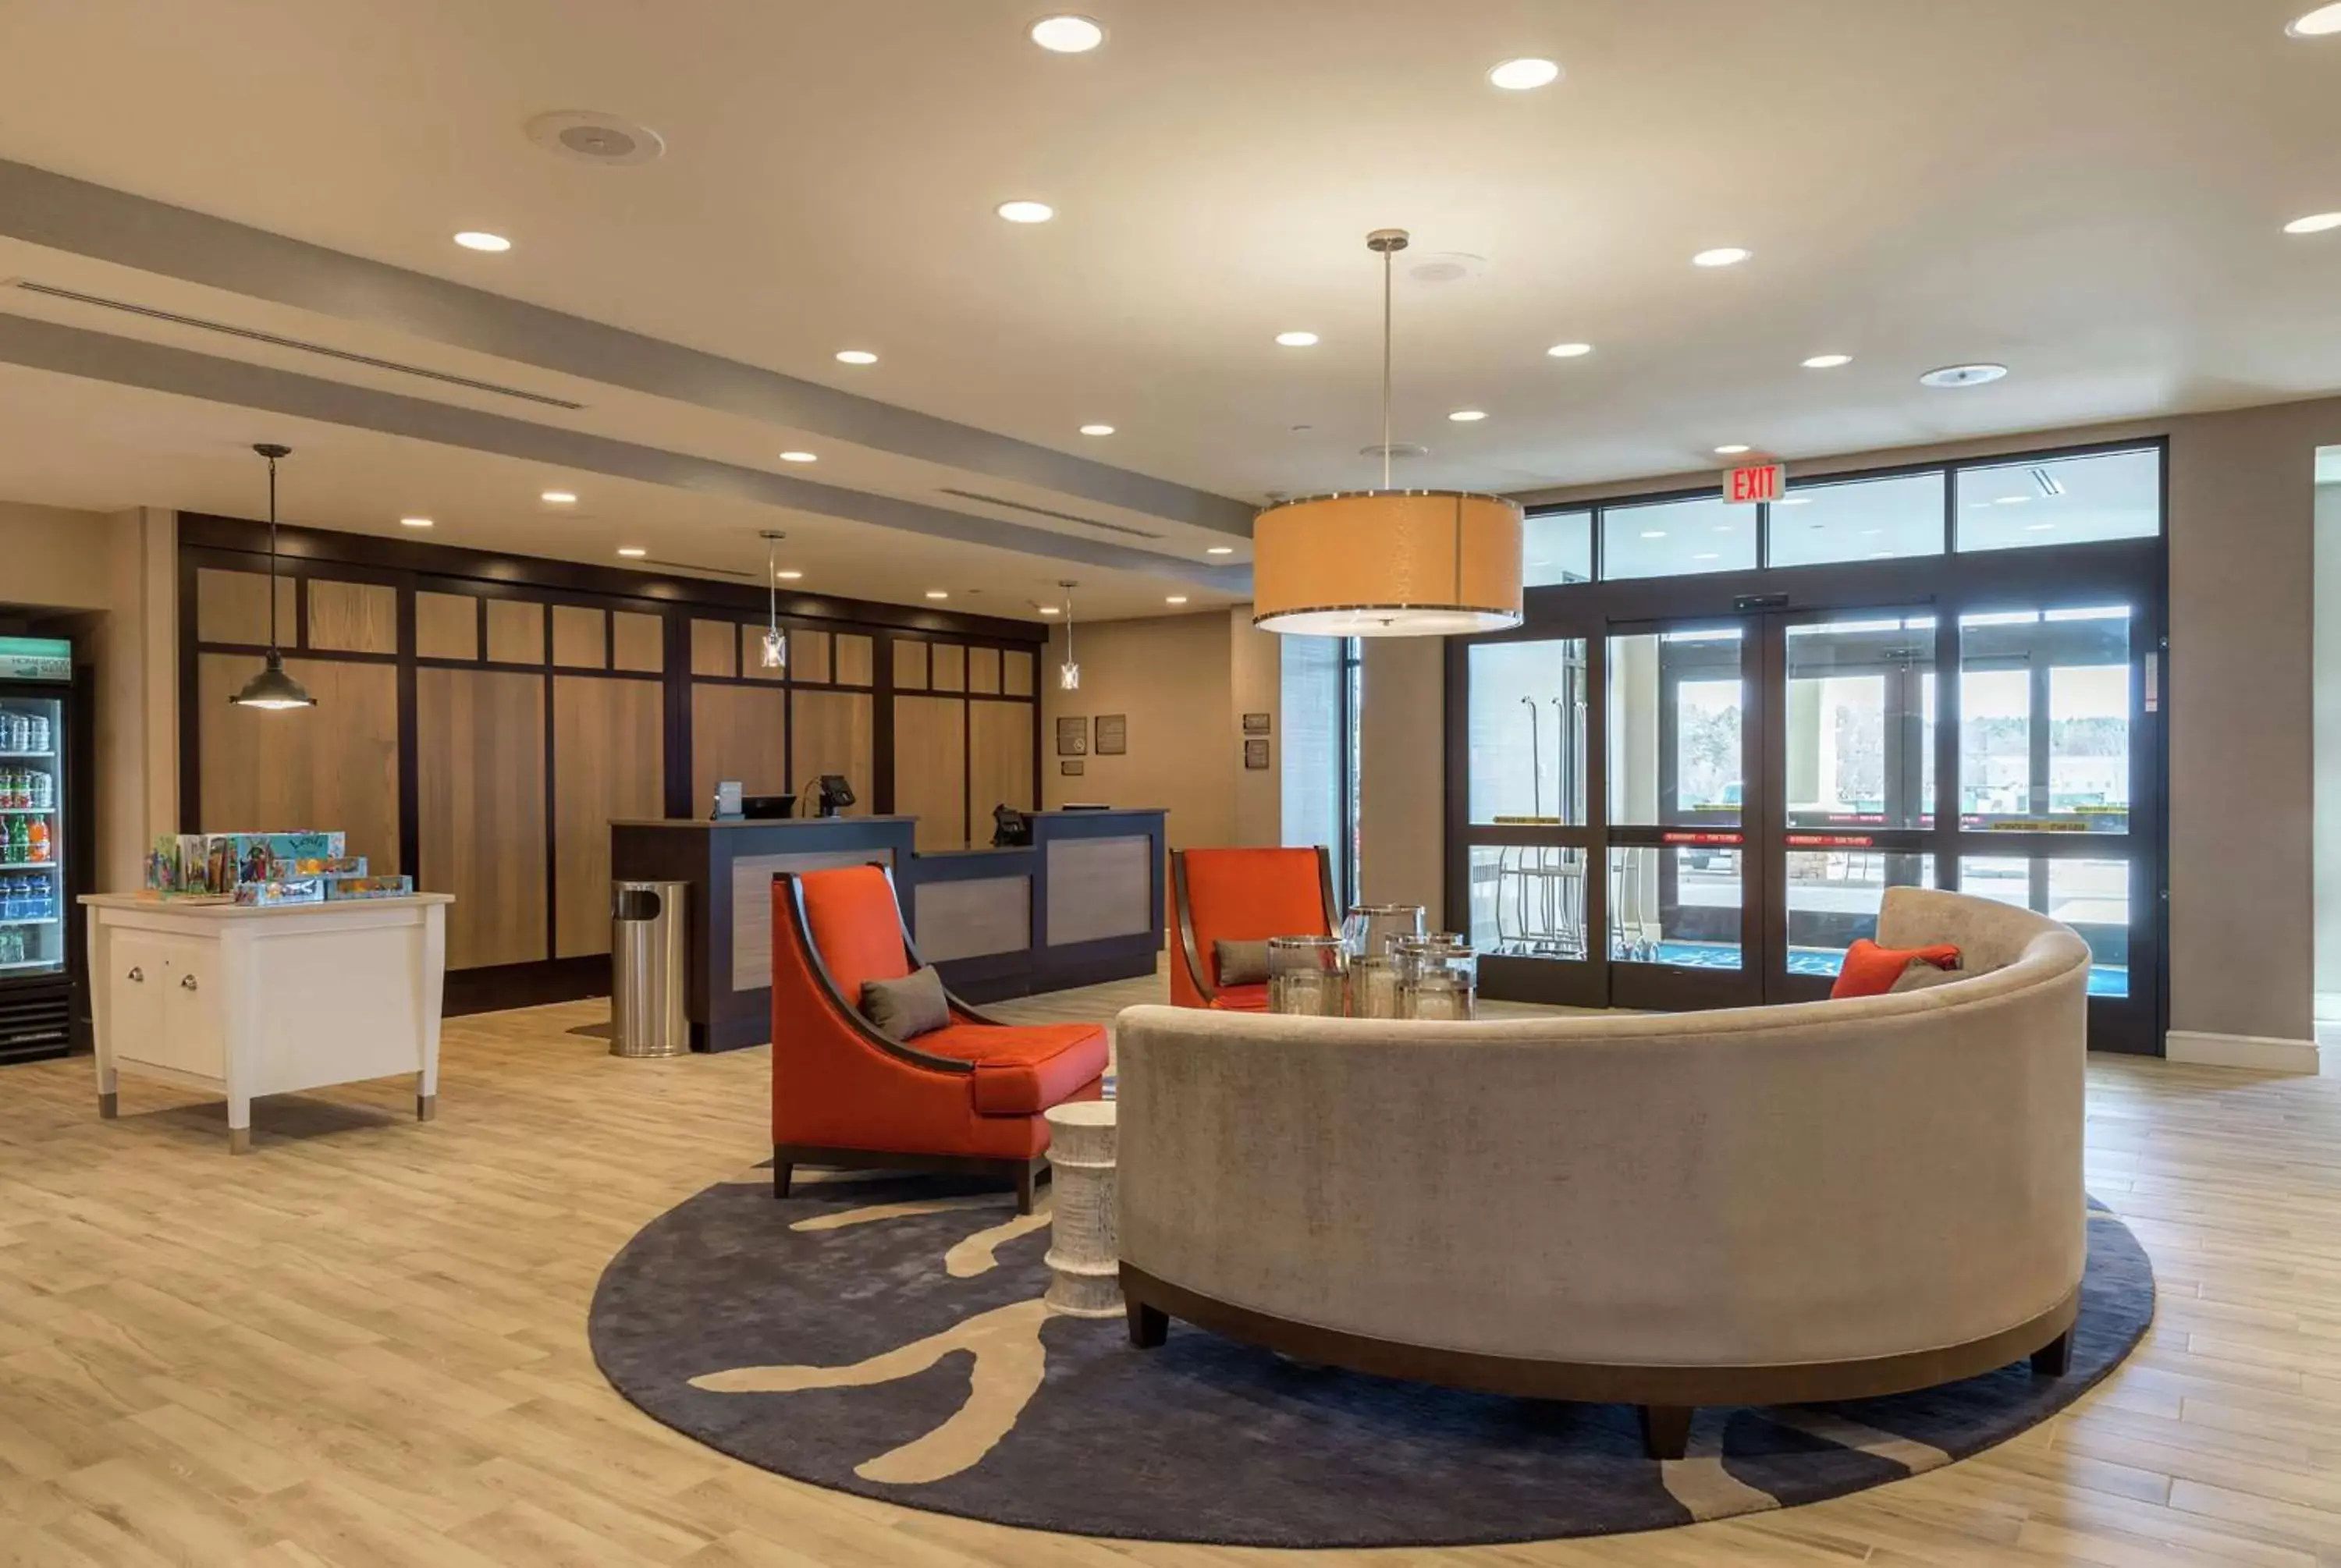 Lobby or reception, Lobby/Reception in Homewood Suites by Hilton Boston Marlborough